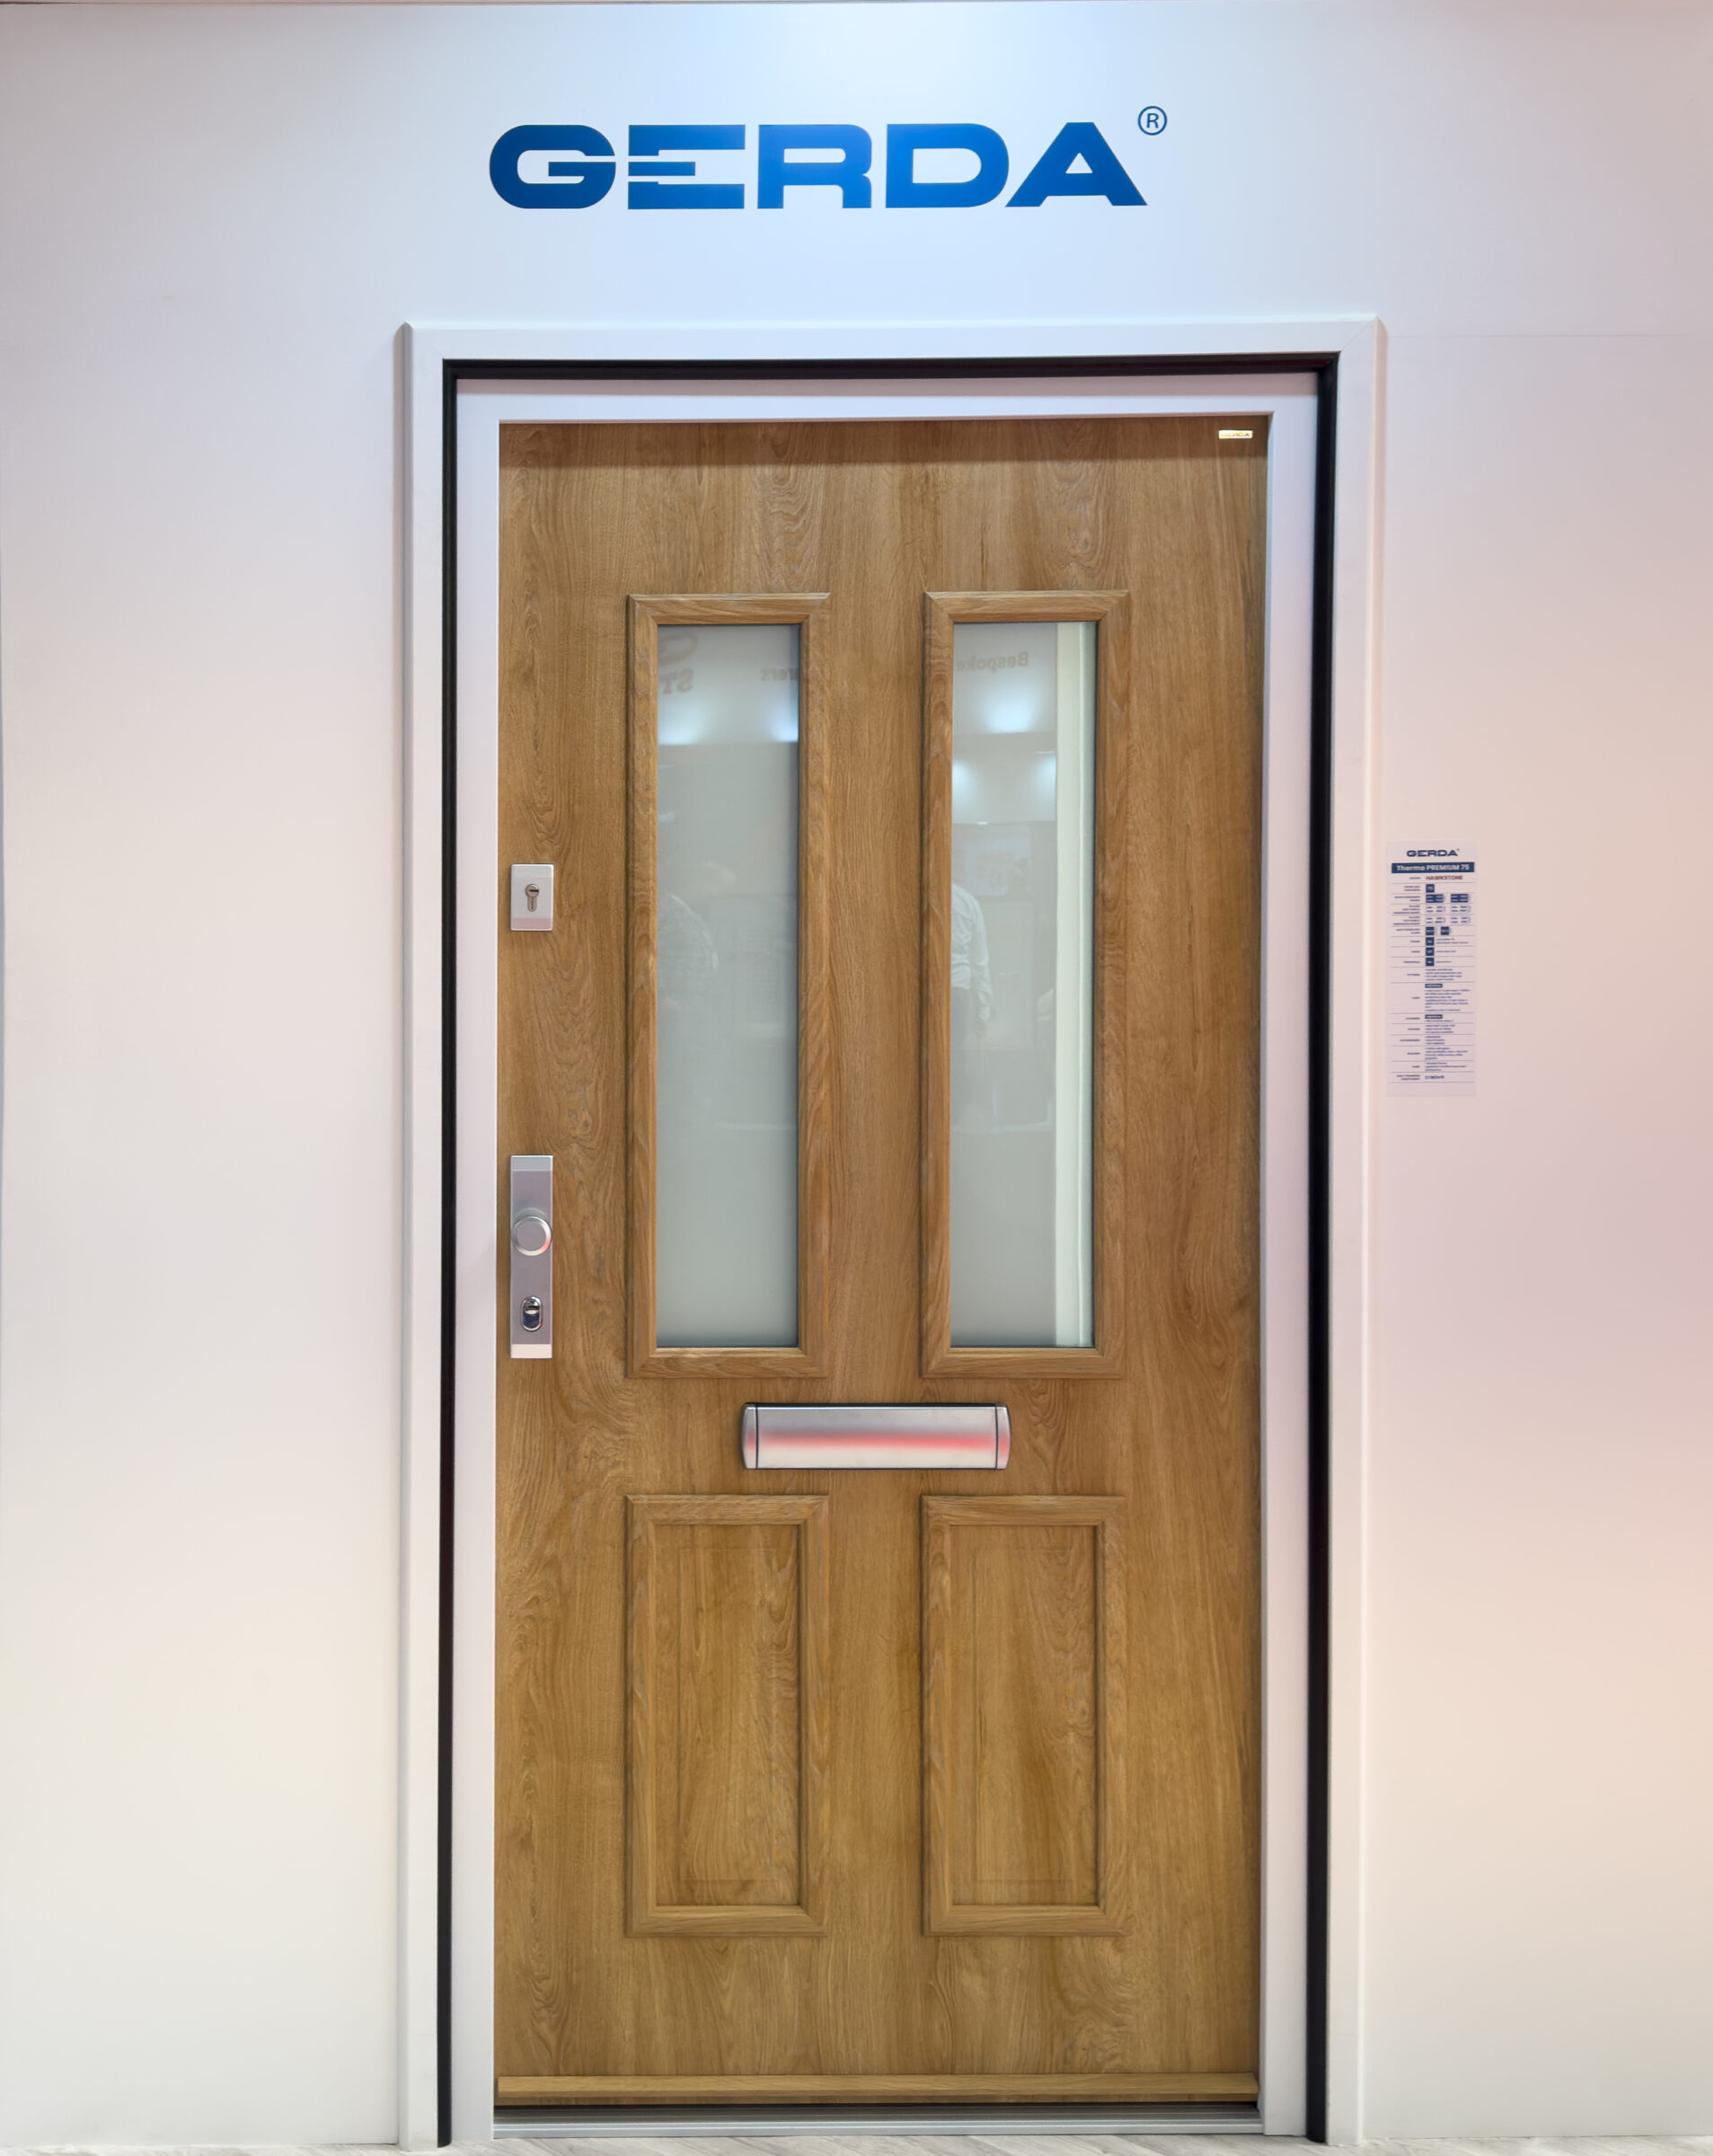 Residential Front Doors in Essex